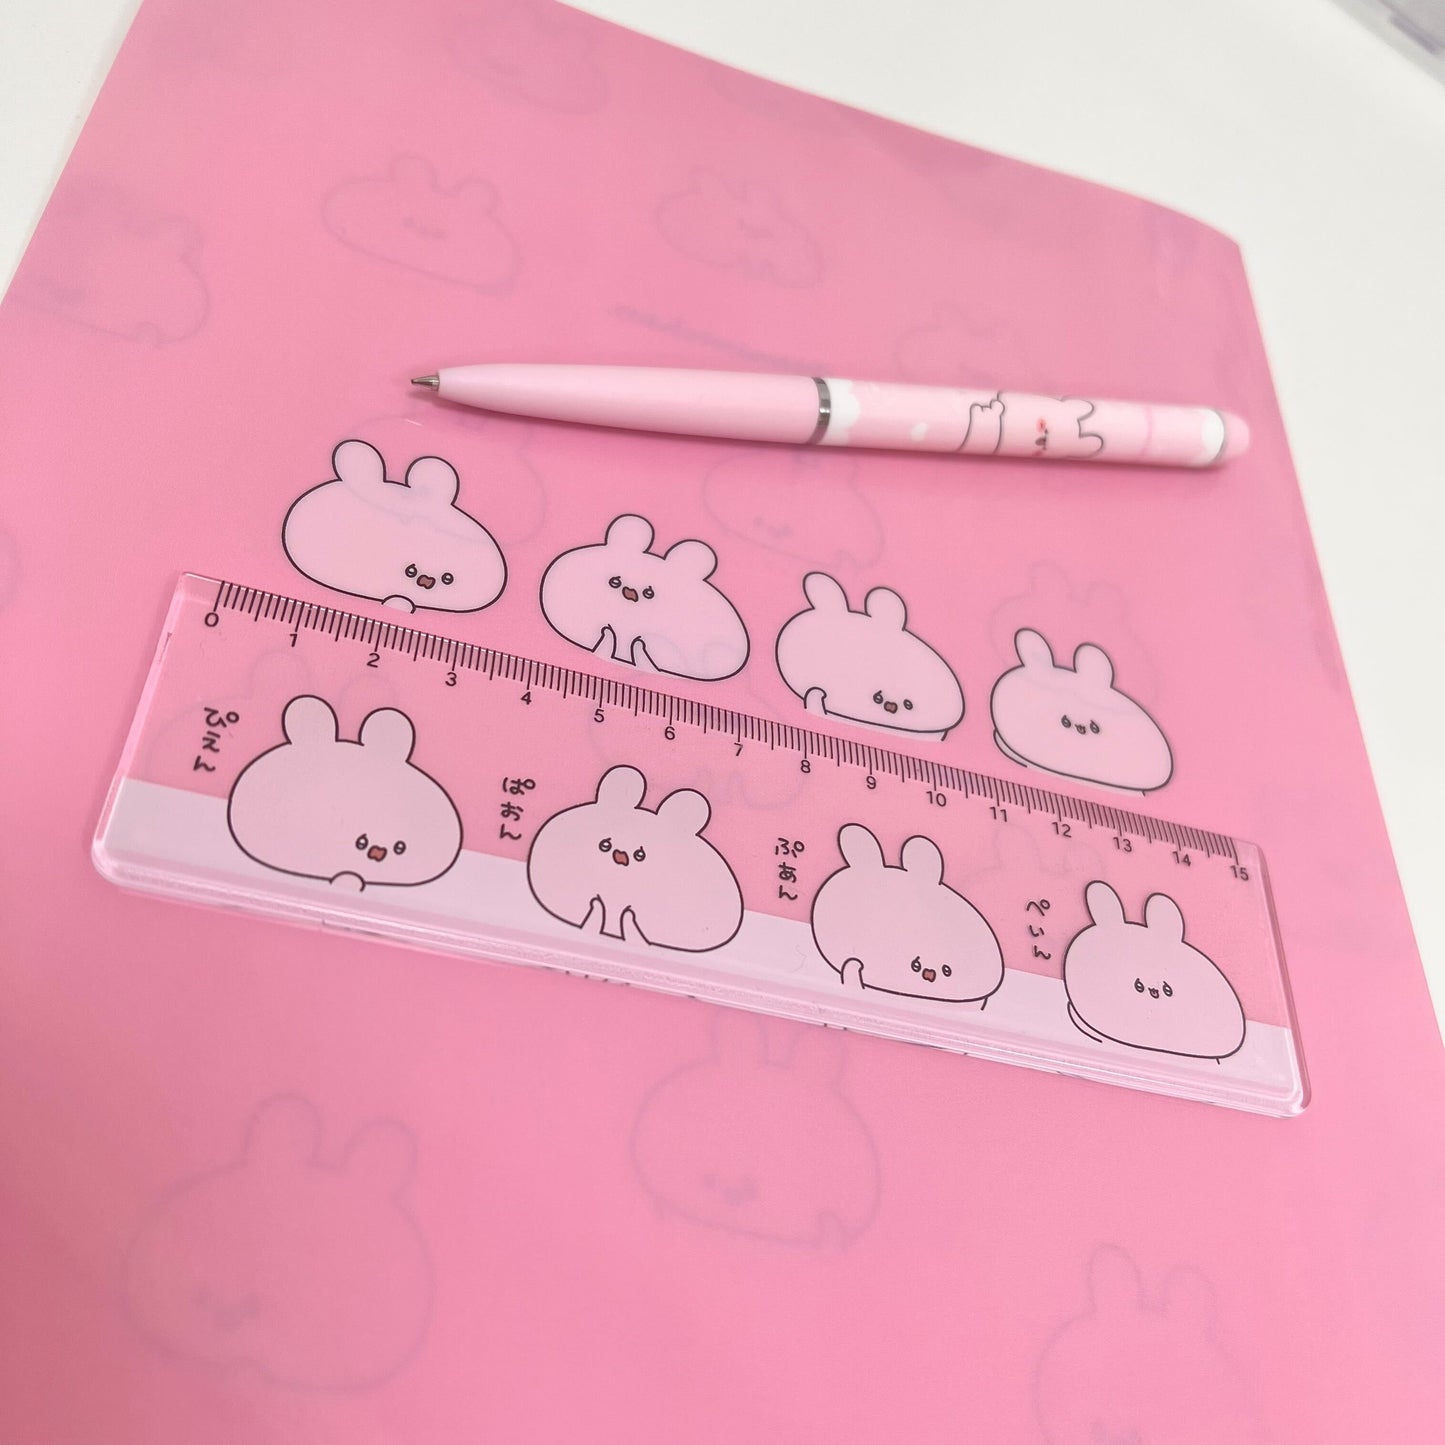 [Asamimi-chan] Viele rosa Kugelschreiber (ASAMIMI BASIC 2023 September) [Versand Mitte November]